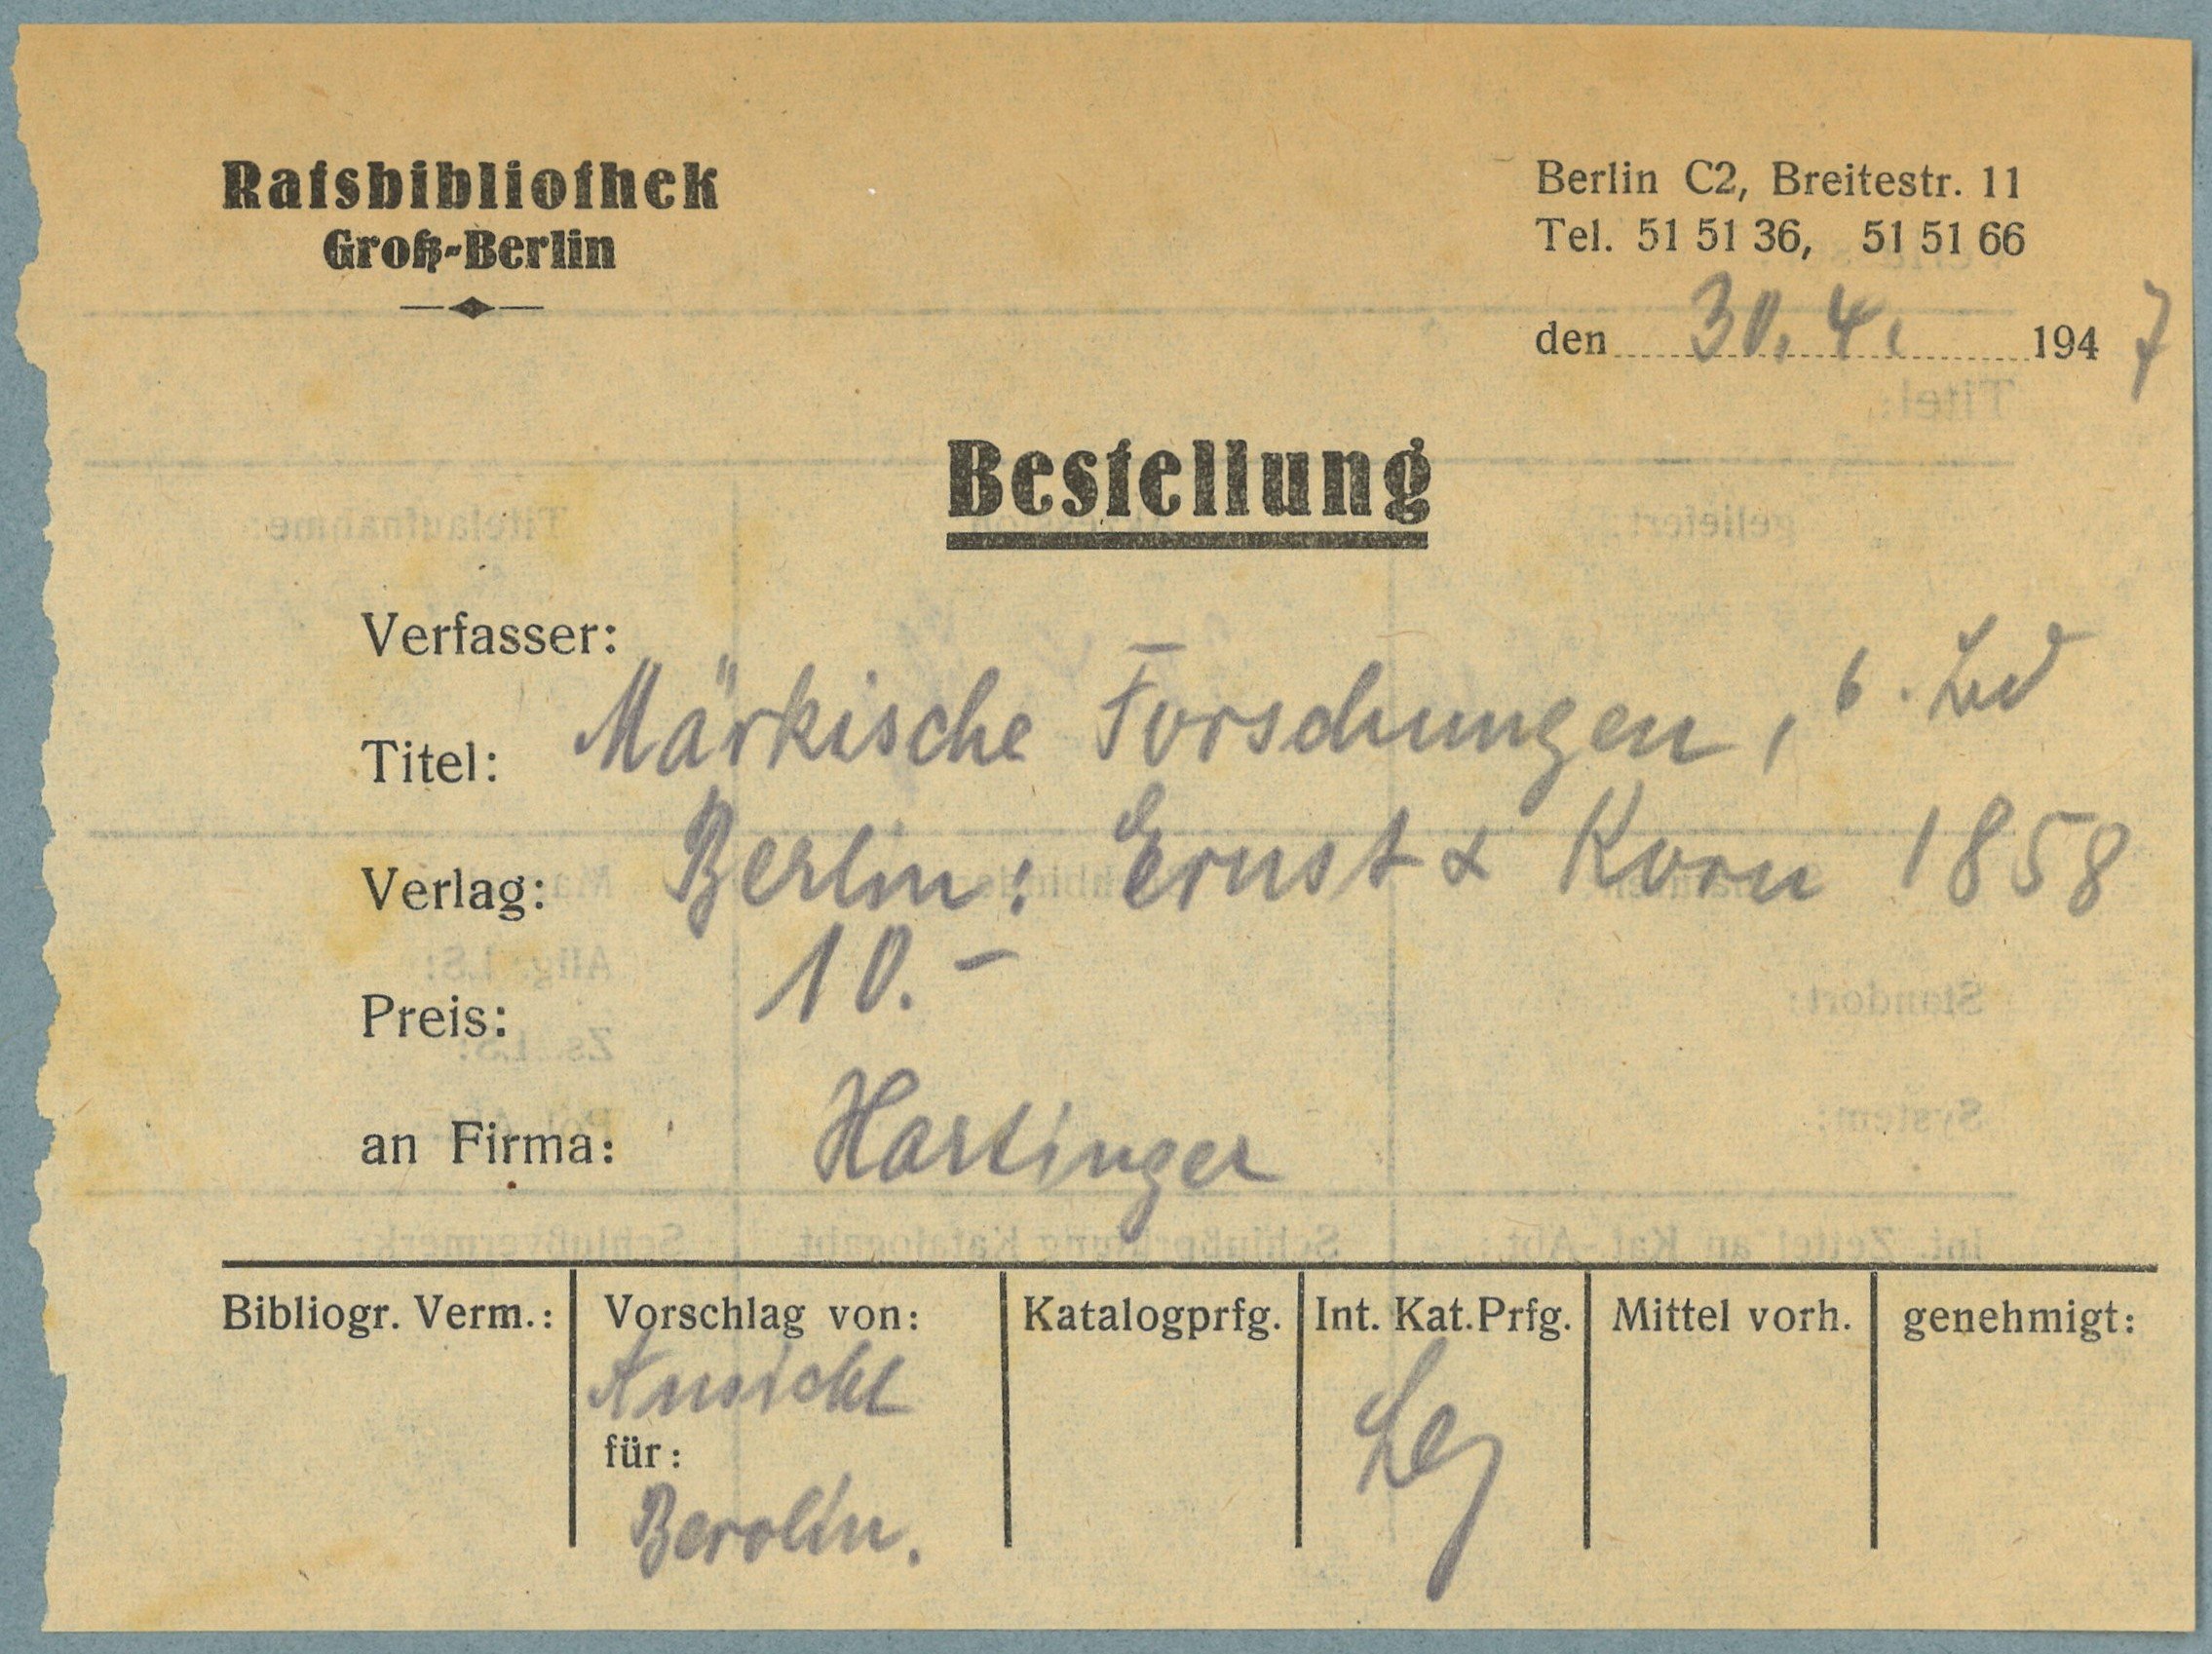 Berlin, Ratsbibliothek: Bestellschein (Landesgeschichtliche Vereinigung für die Mark Brandenburg e.V., Archiv CC BY)